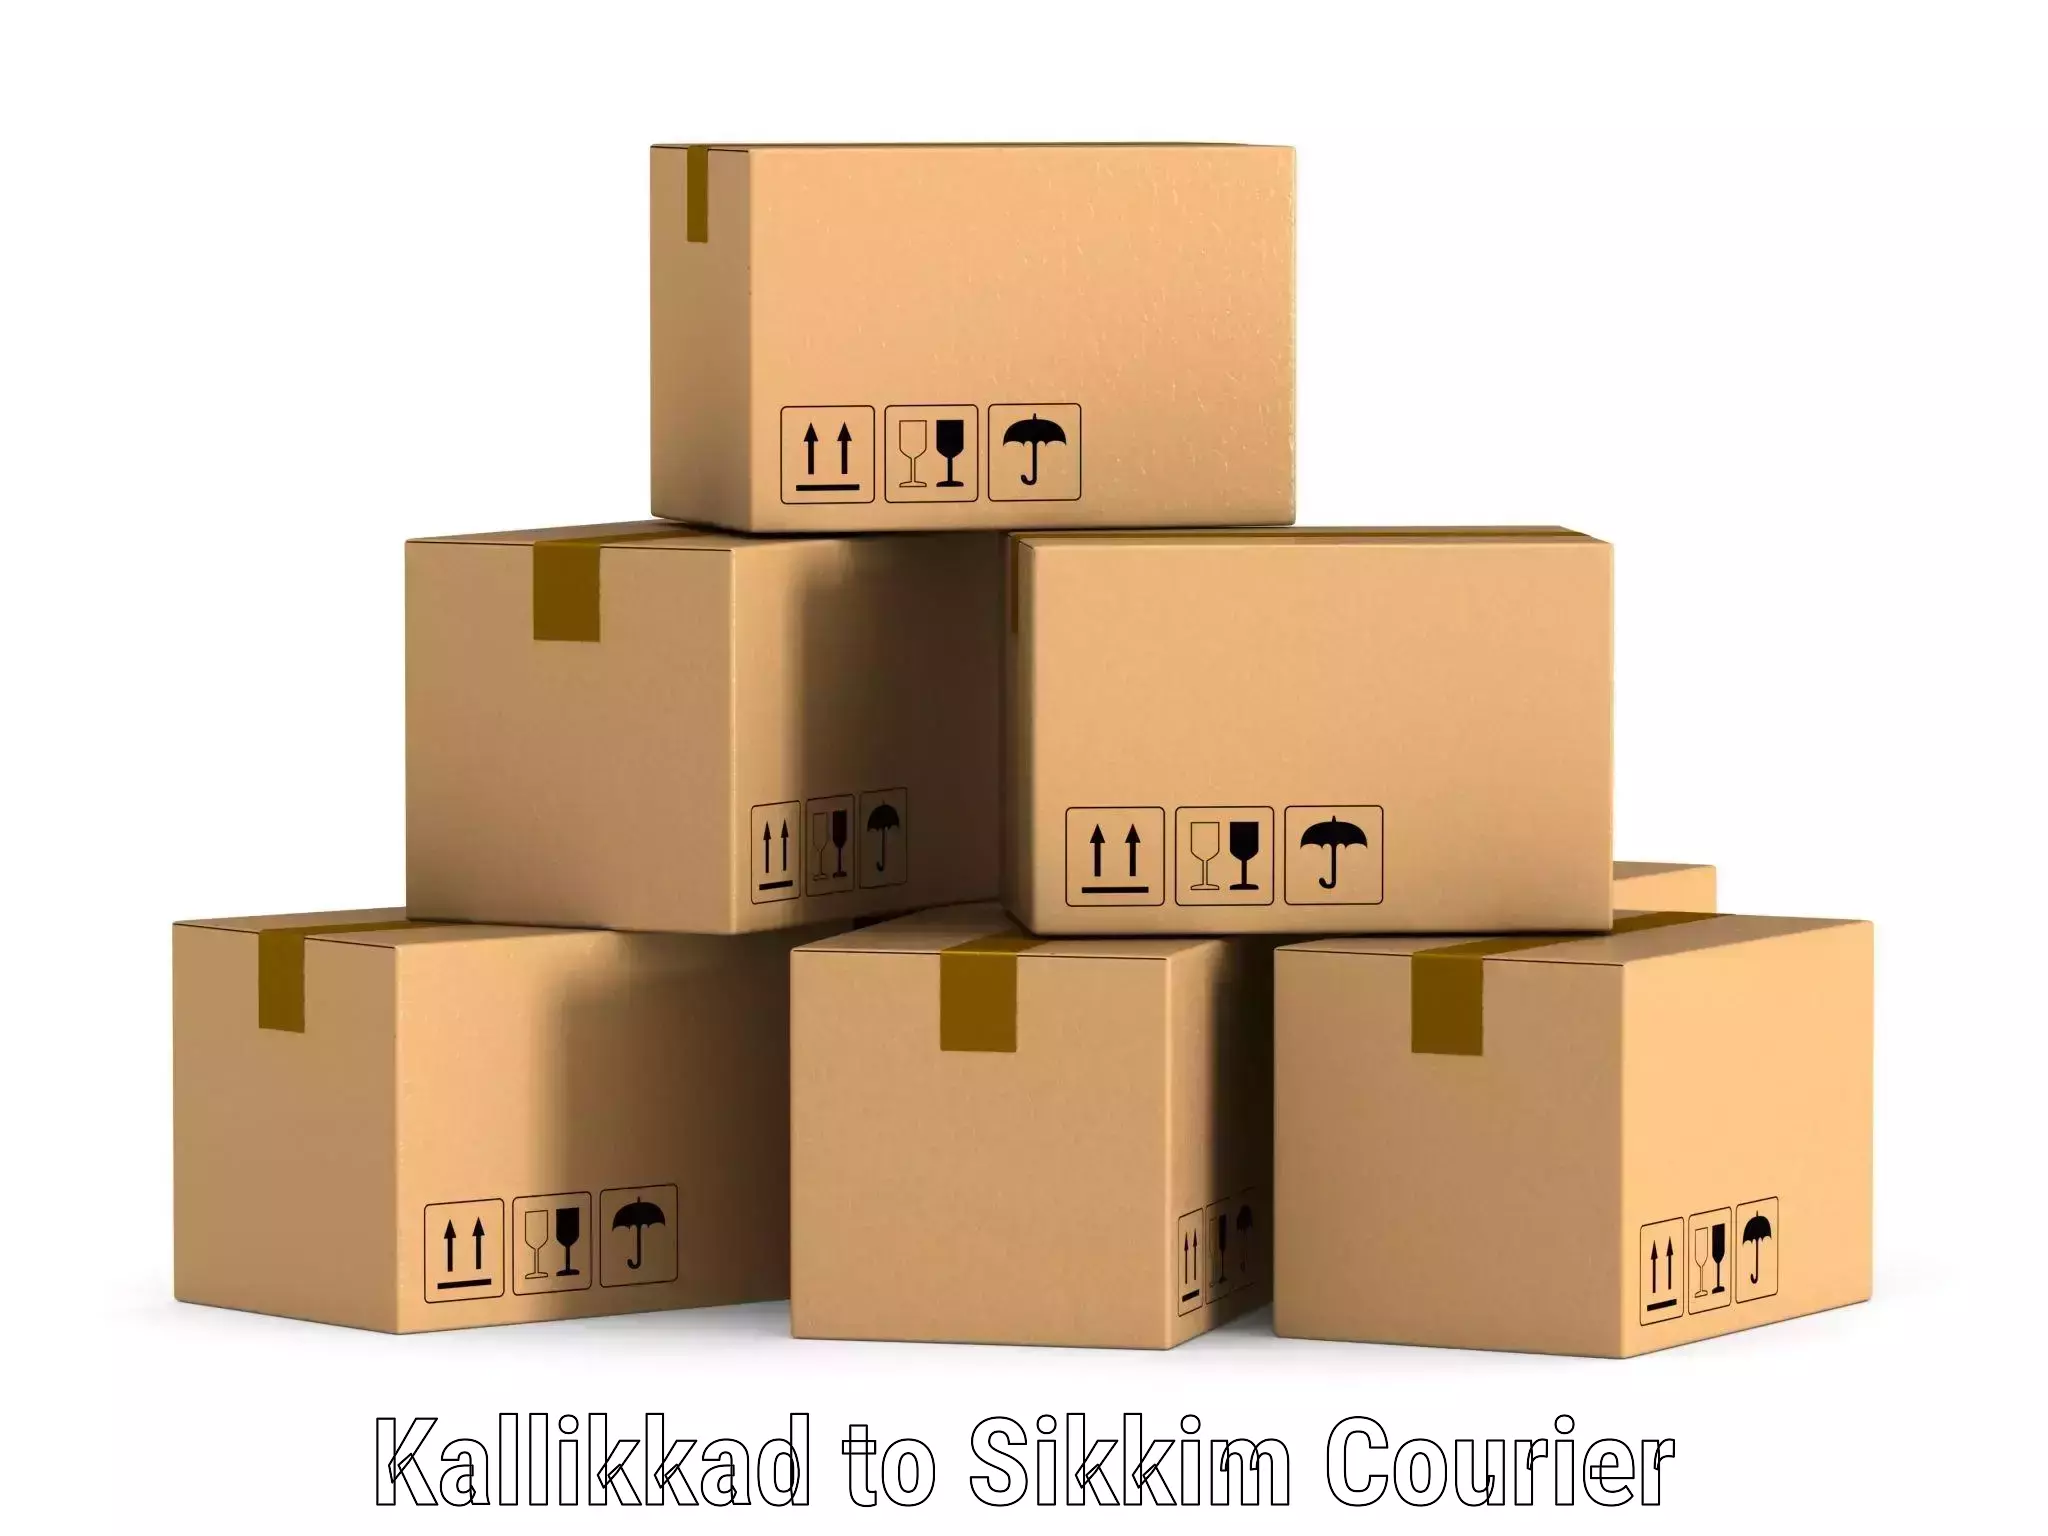 Subscription-based courier Kallikkad to Singtam